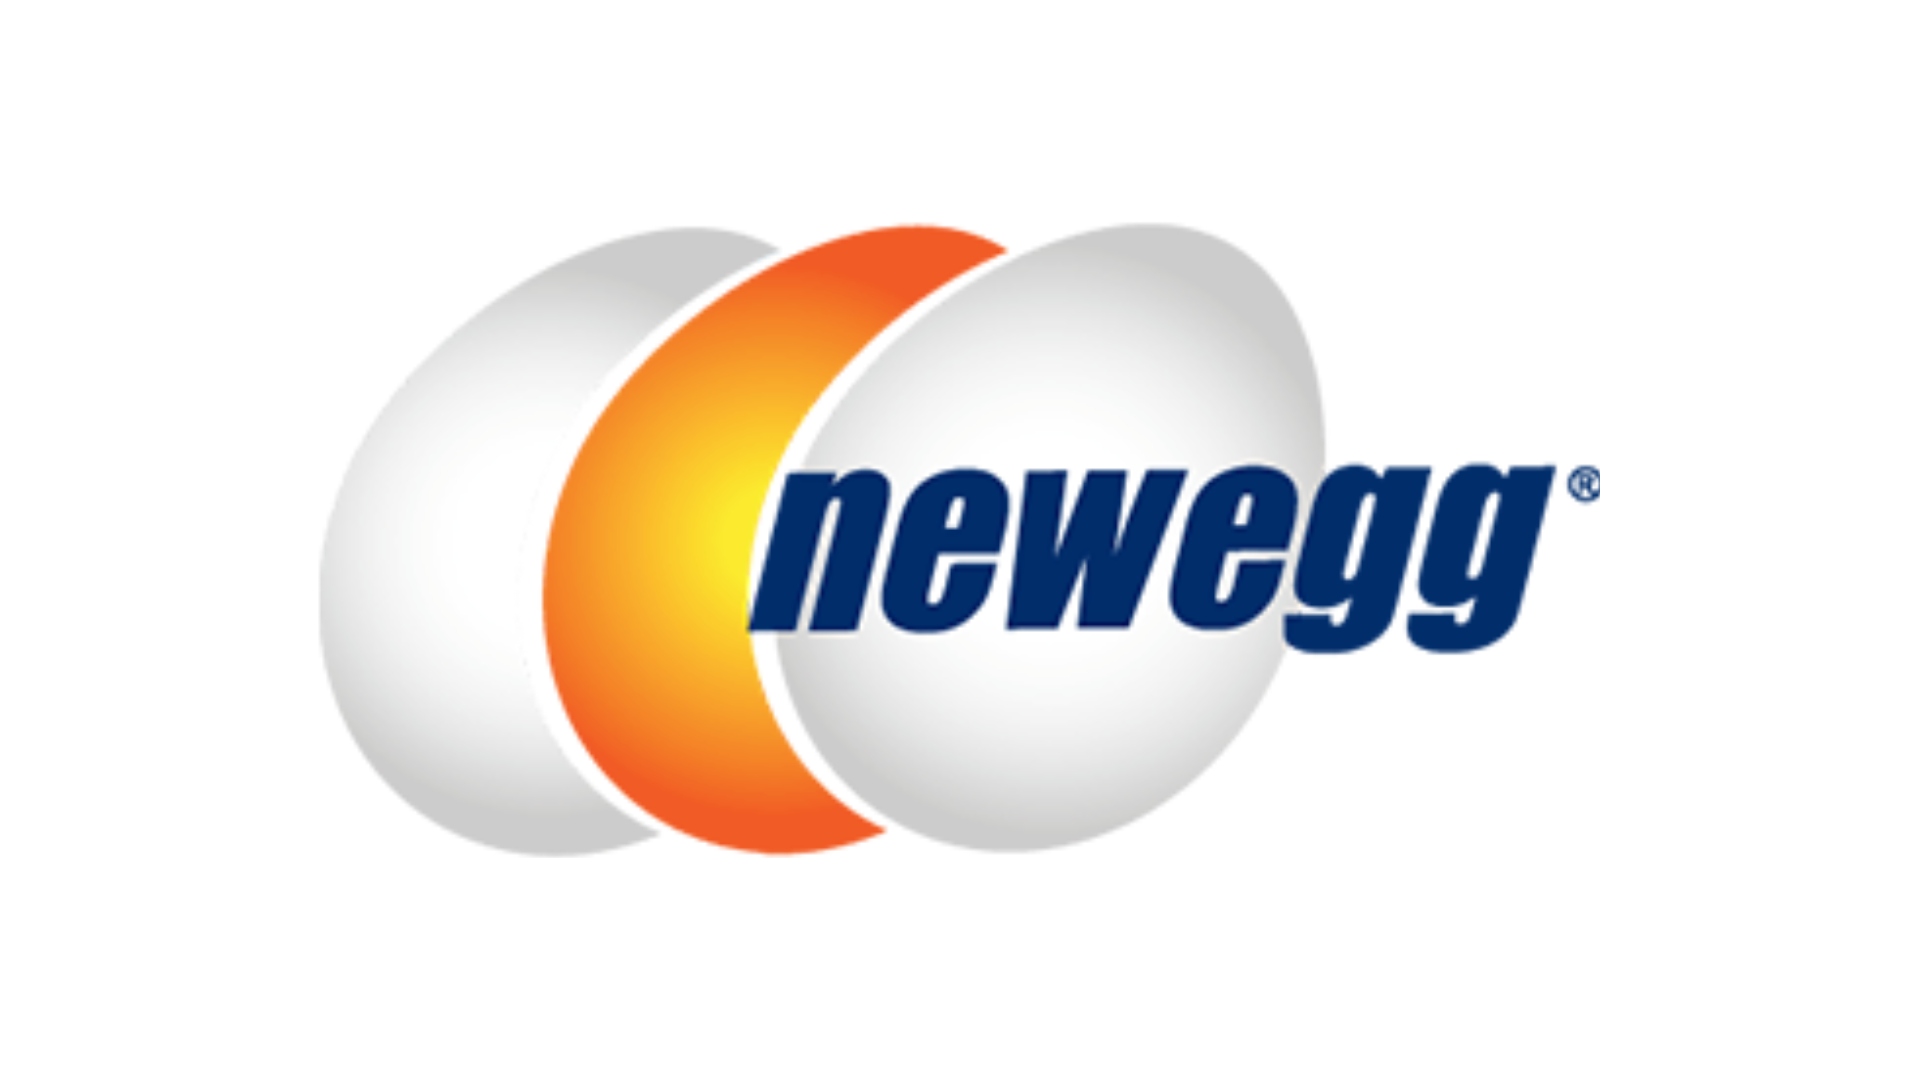 Beste websites voor aangepaste pc -builds, nummer 2: Newegg. Het logo staat op een witte achtergrond